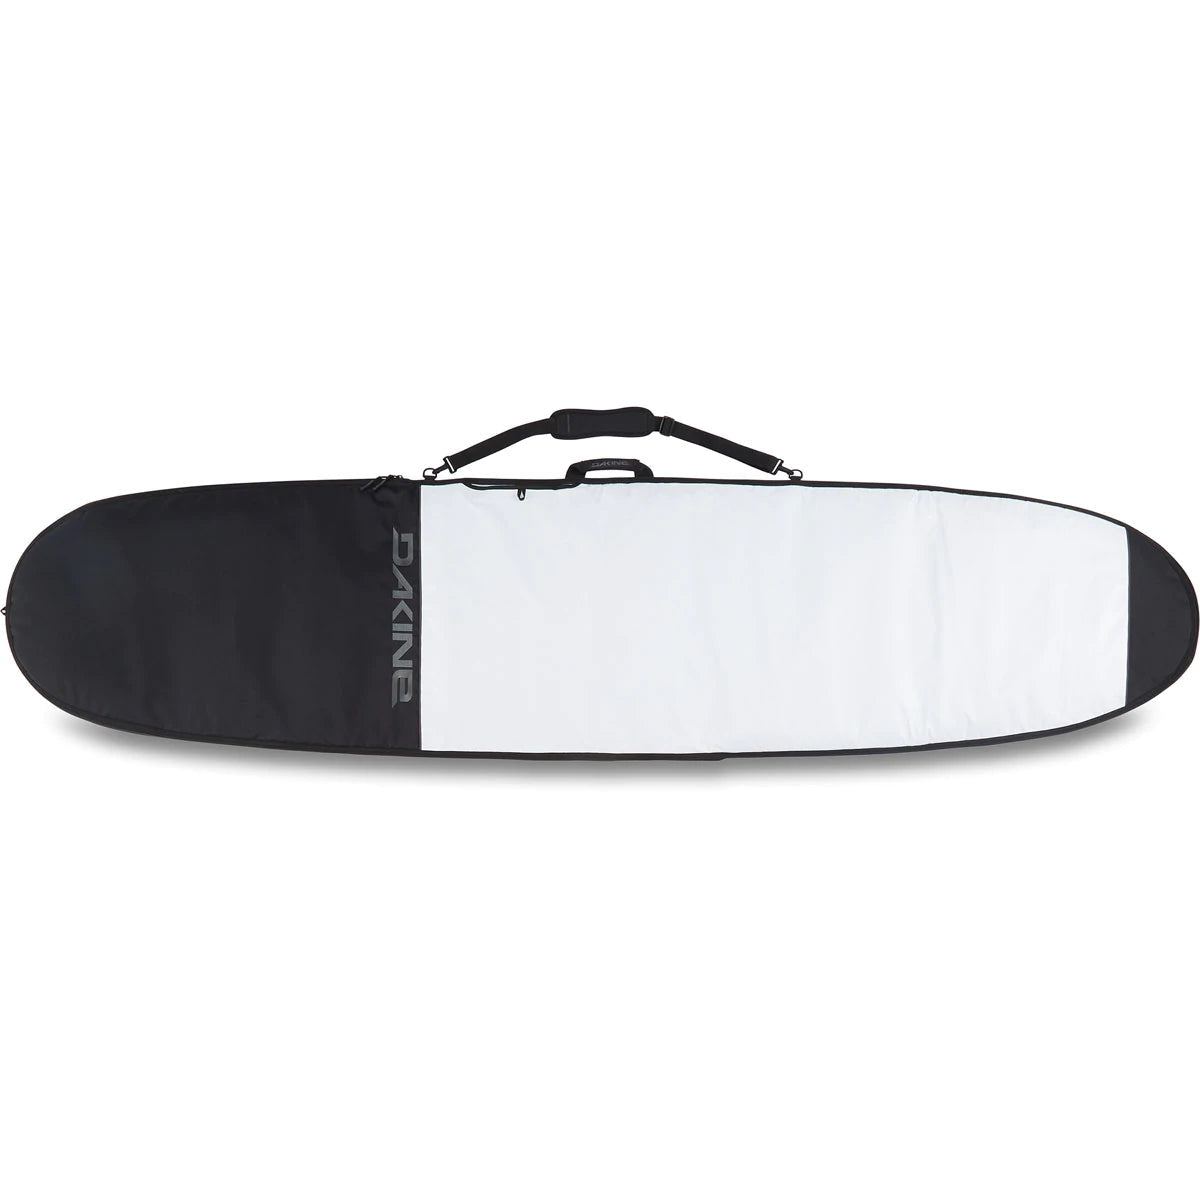 8'6" Dakine Daylight Surfboard Bag - Noserider